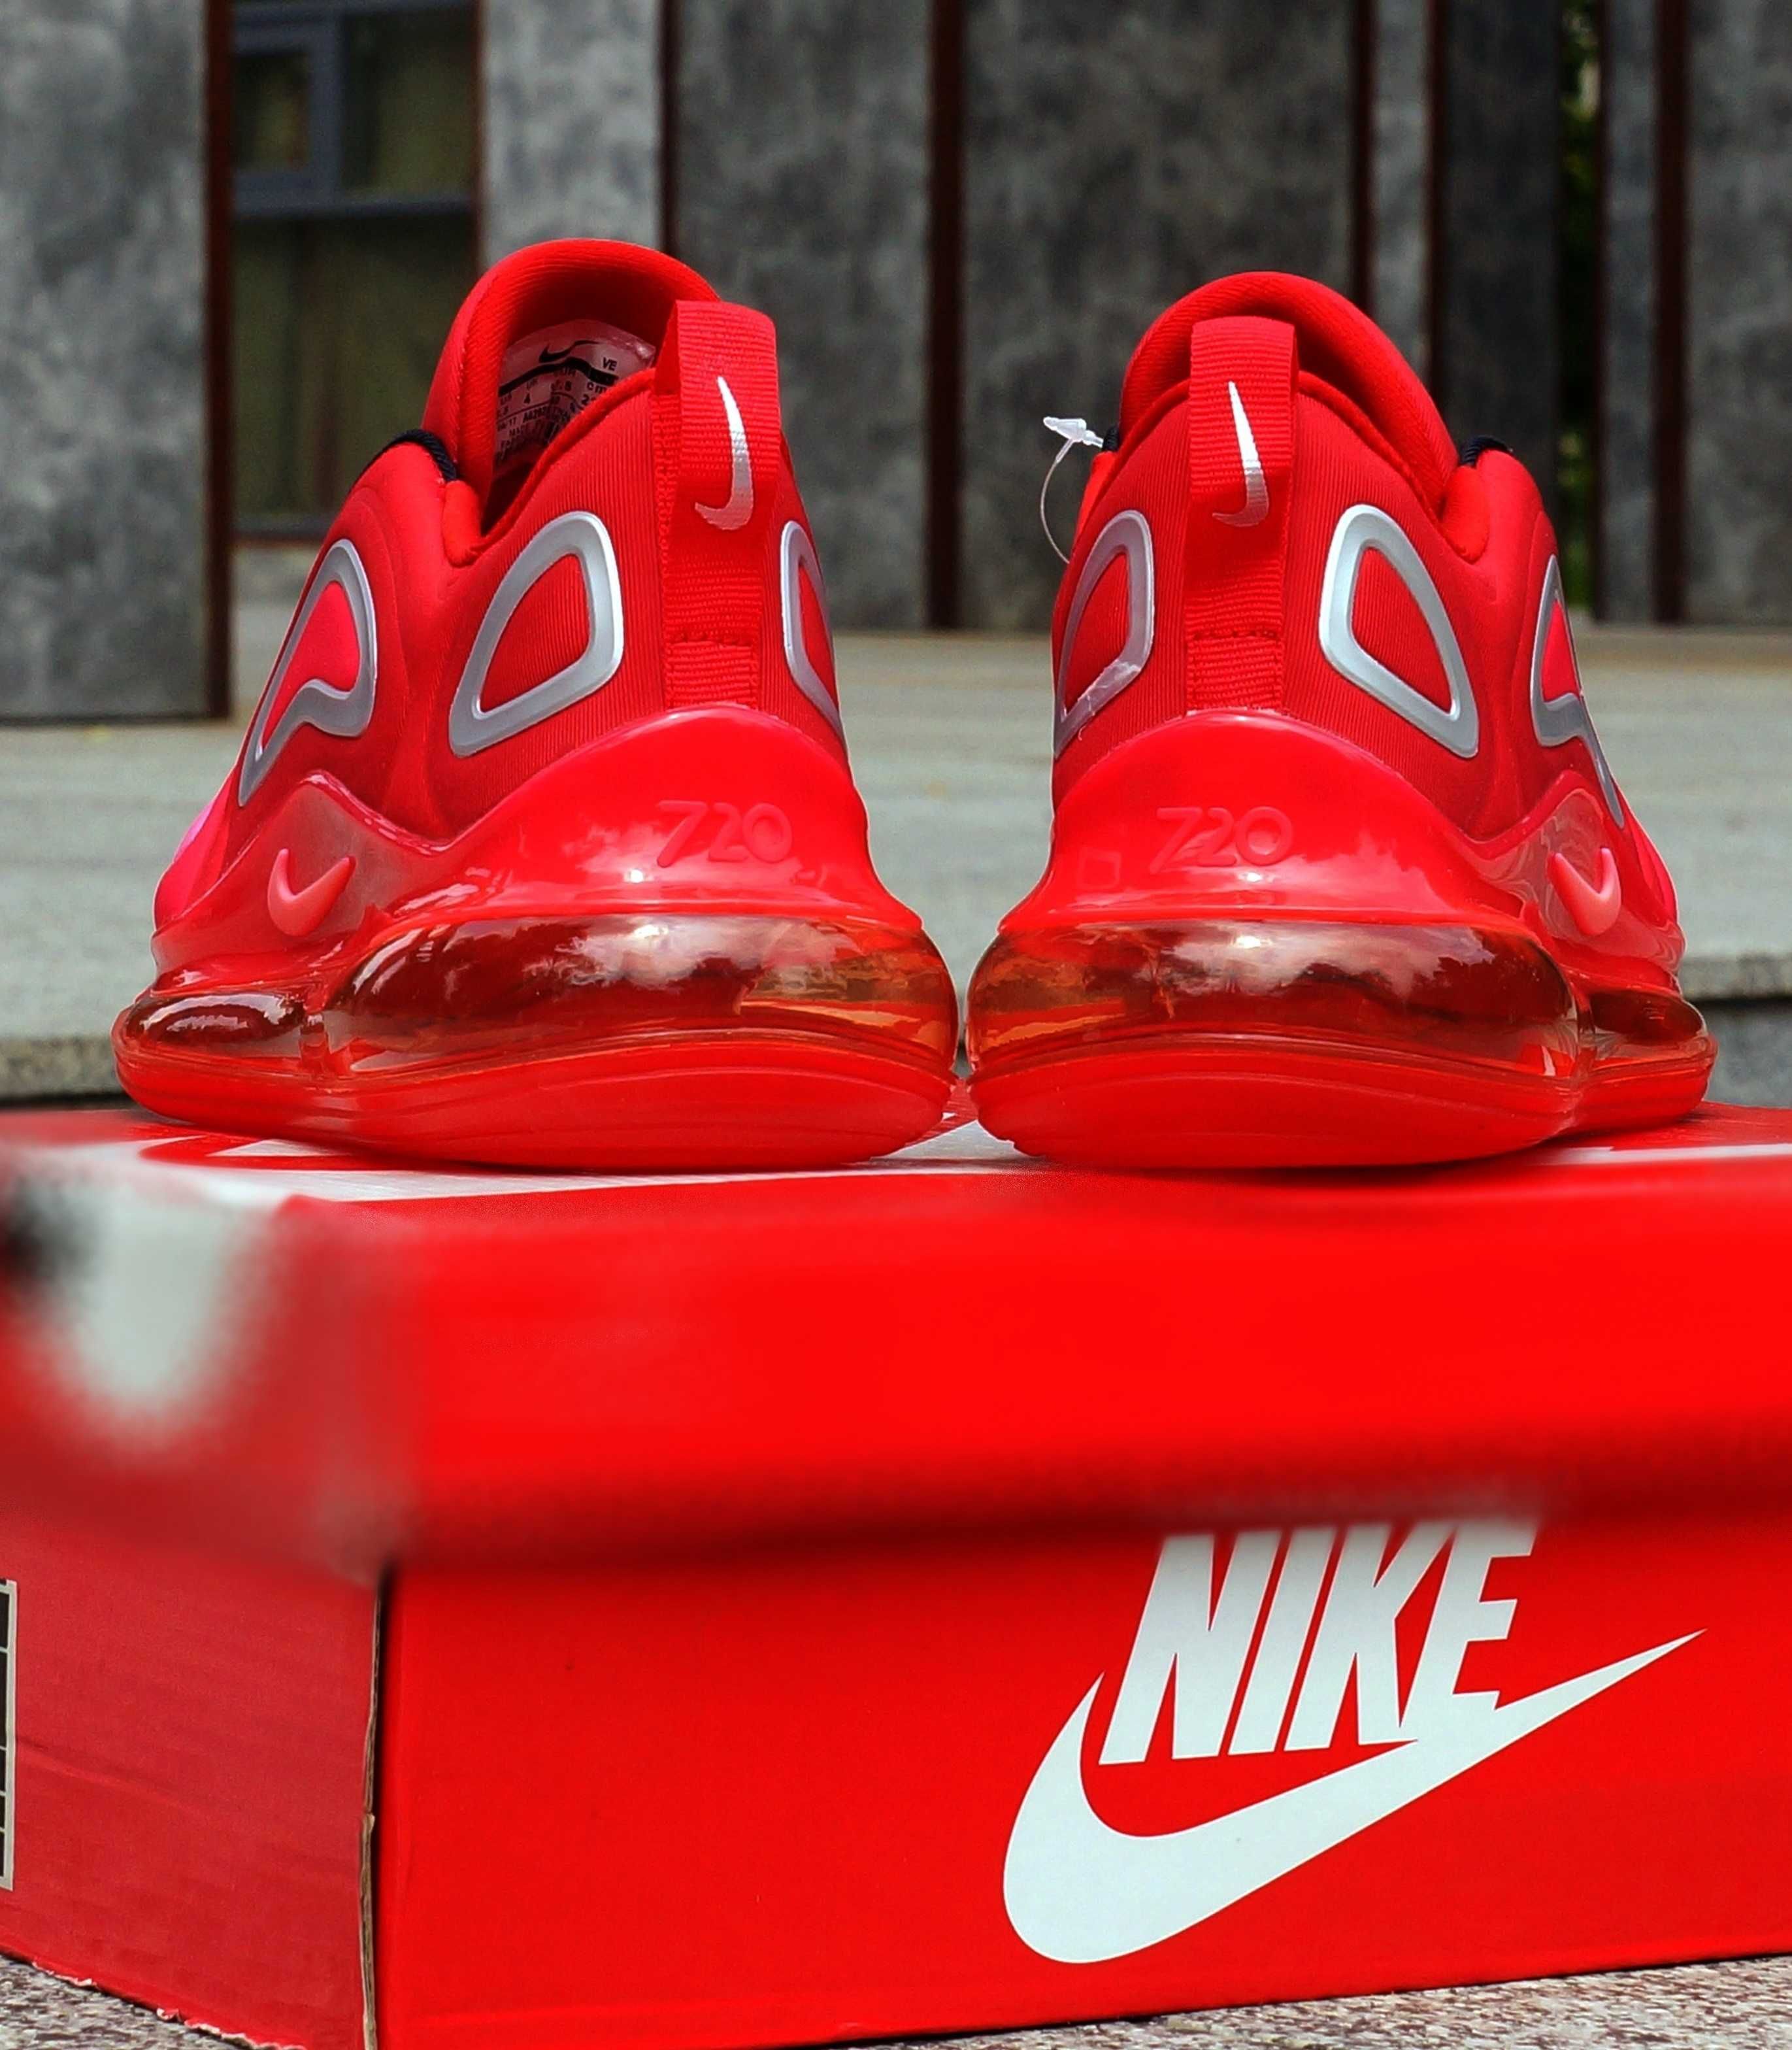 Кросівки Nike Air Max 720 червоні (36-40) - найки, В,єтнам, арт 1346